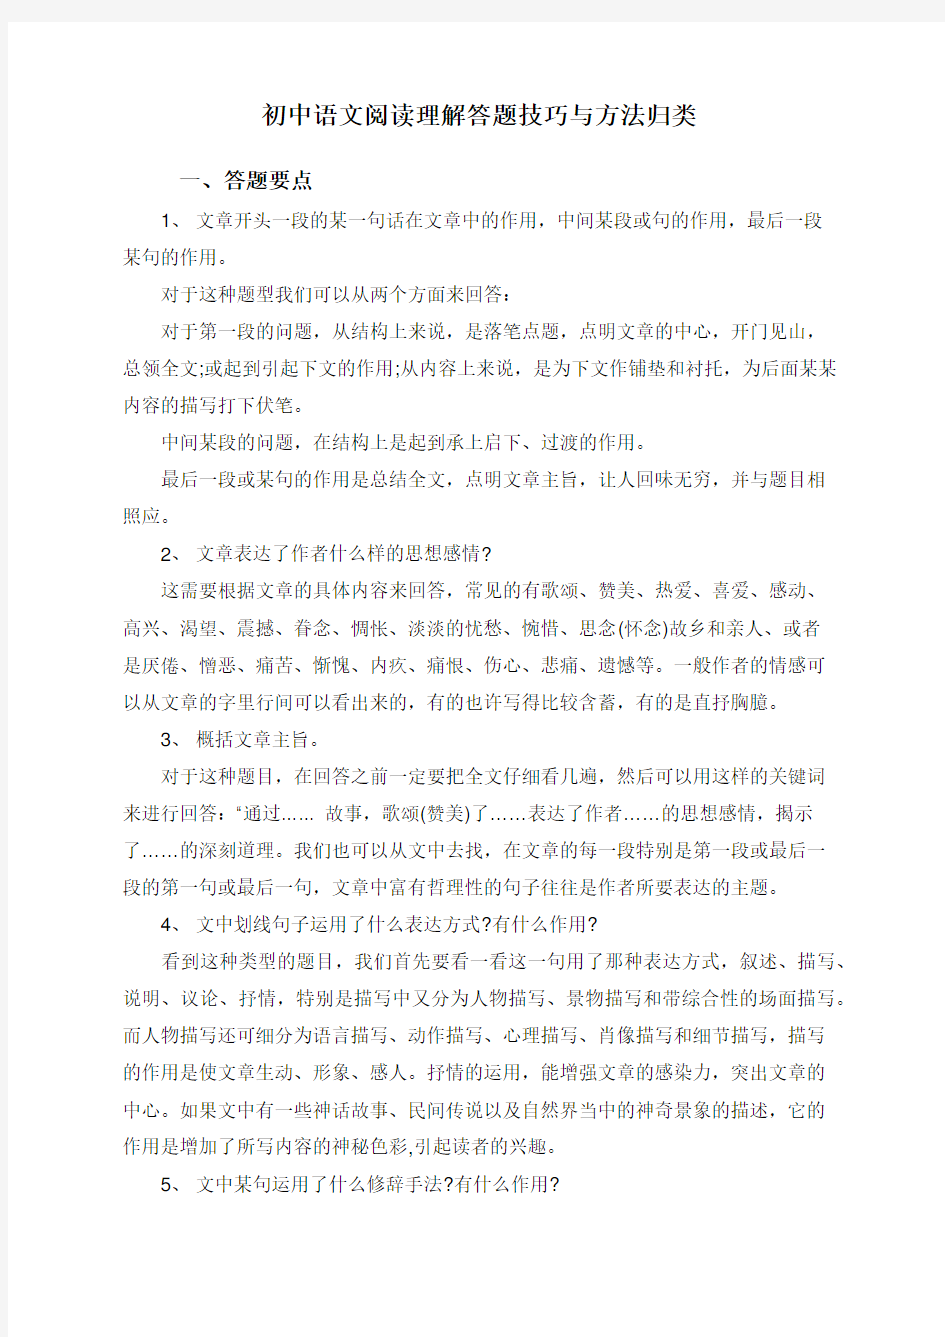 初中语文阅读理解答题技巧与方法归类-初中语文阅读理解解题技巧